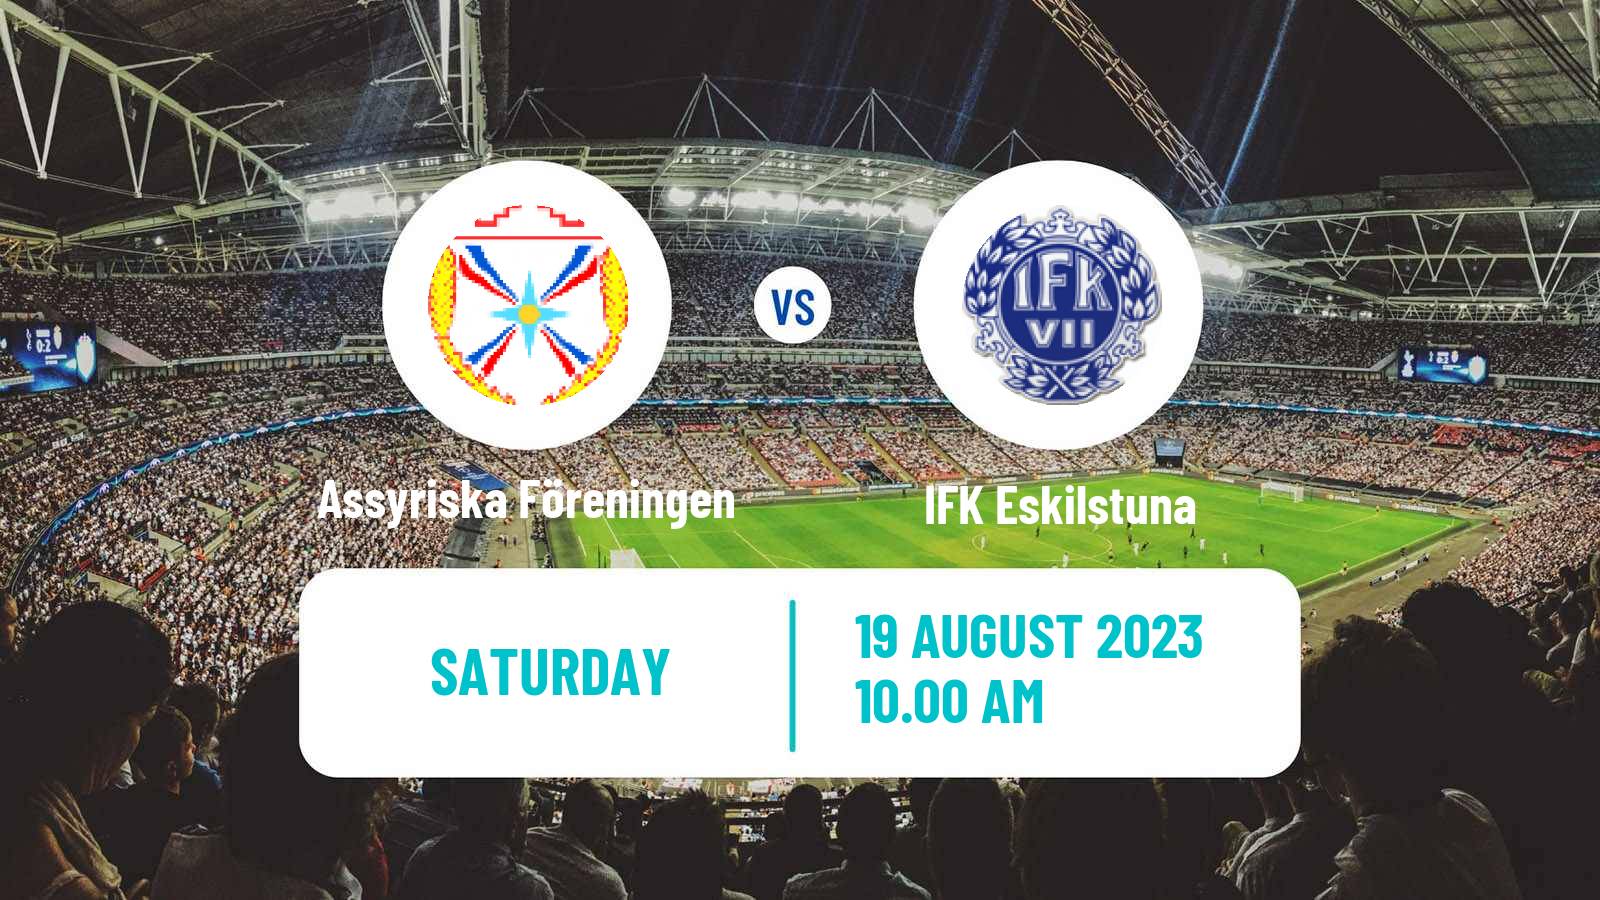 Soccer Swedish Division 2 - Södra Svealand Assyriska Föreningen - IFK Eskilstuna